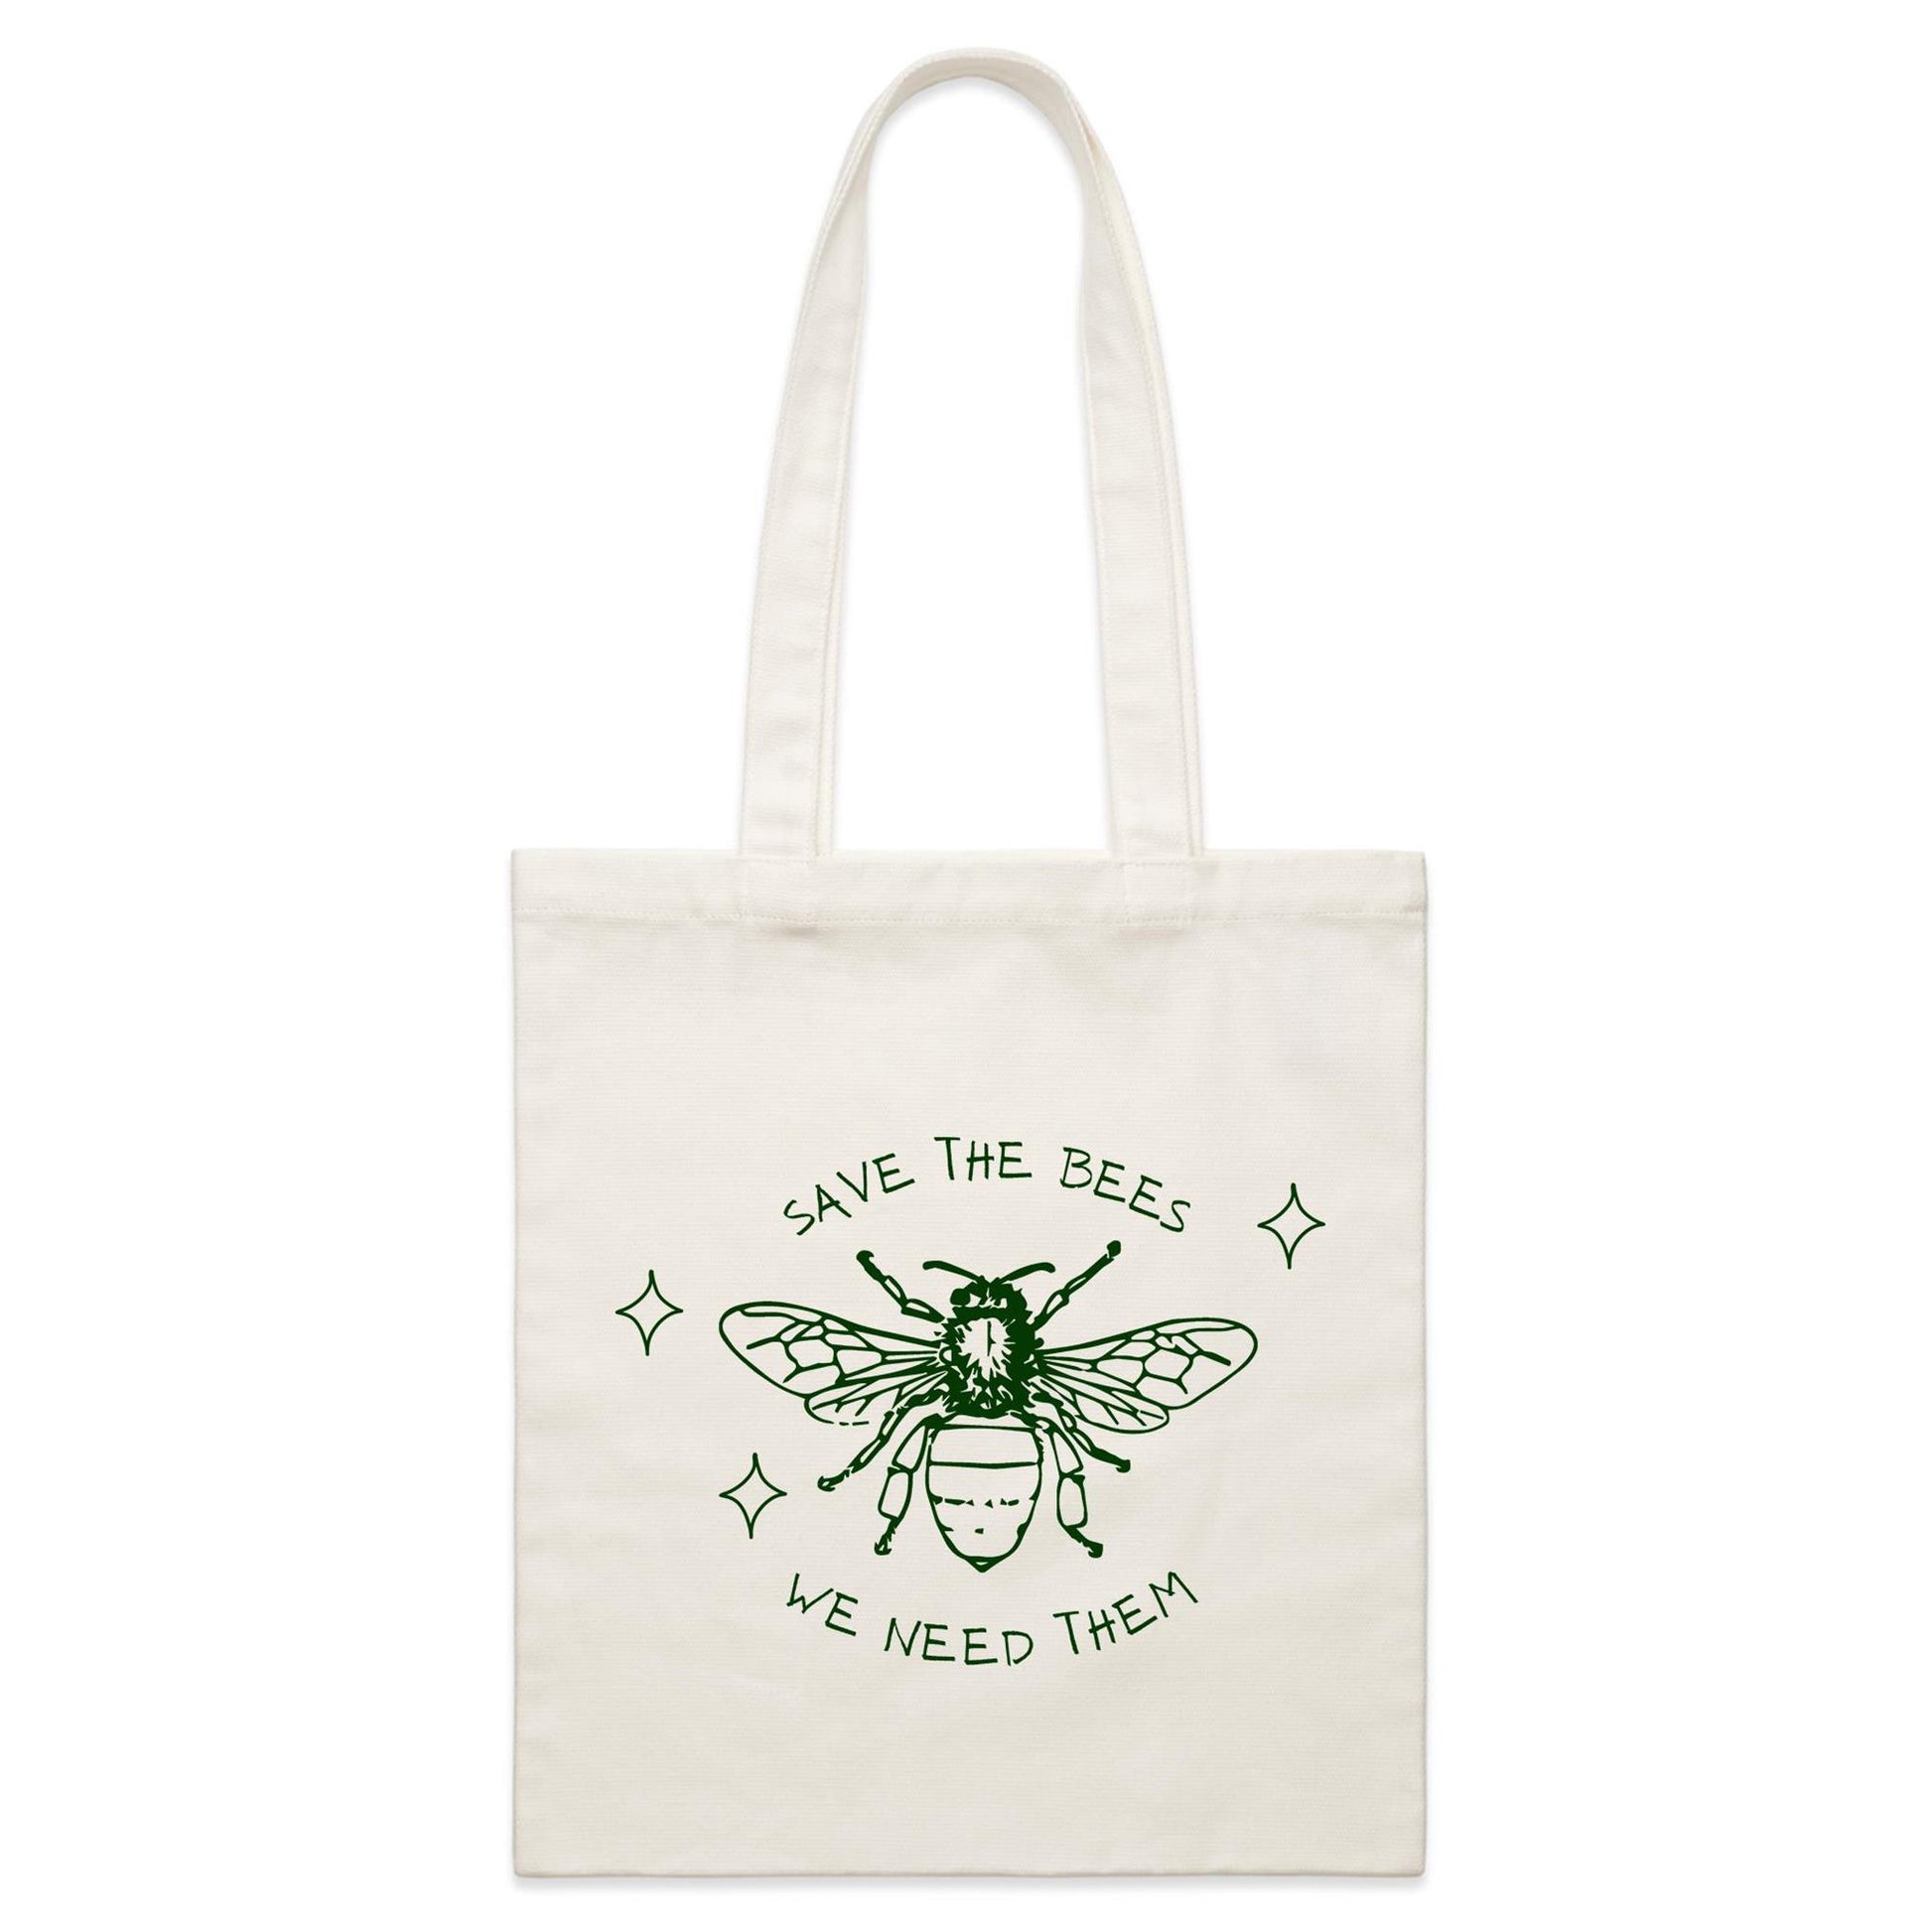 Save The Bees - Parcel Canvas Tote Bag Default Title Parcel Tote Bag